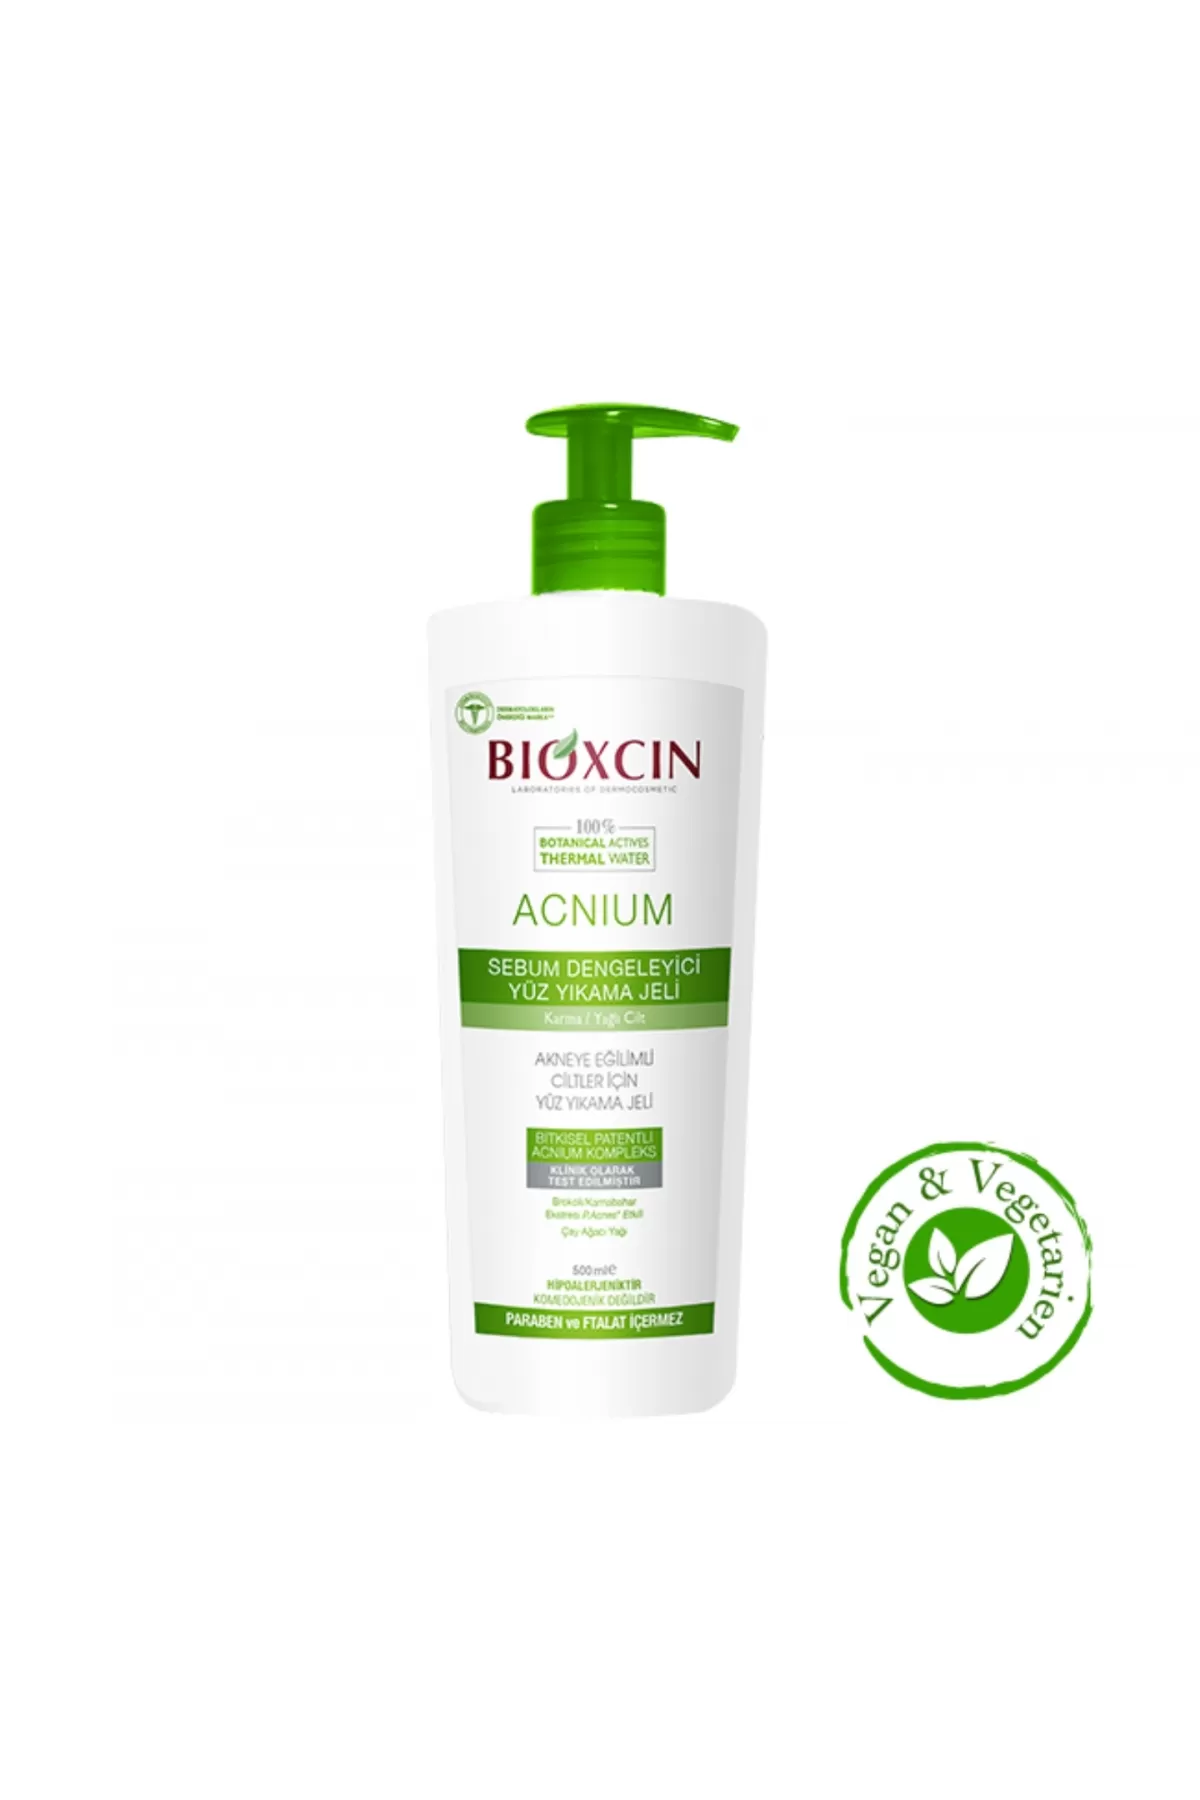 مخصوص پوست های چرب و جوش دار و مختلط ۴۰۰ میل بیوکسین BIOXCIN ژل شست و شوی صورت درخت چای